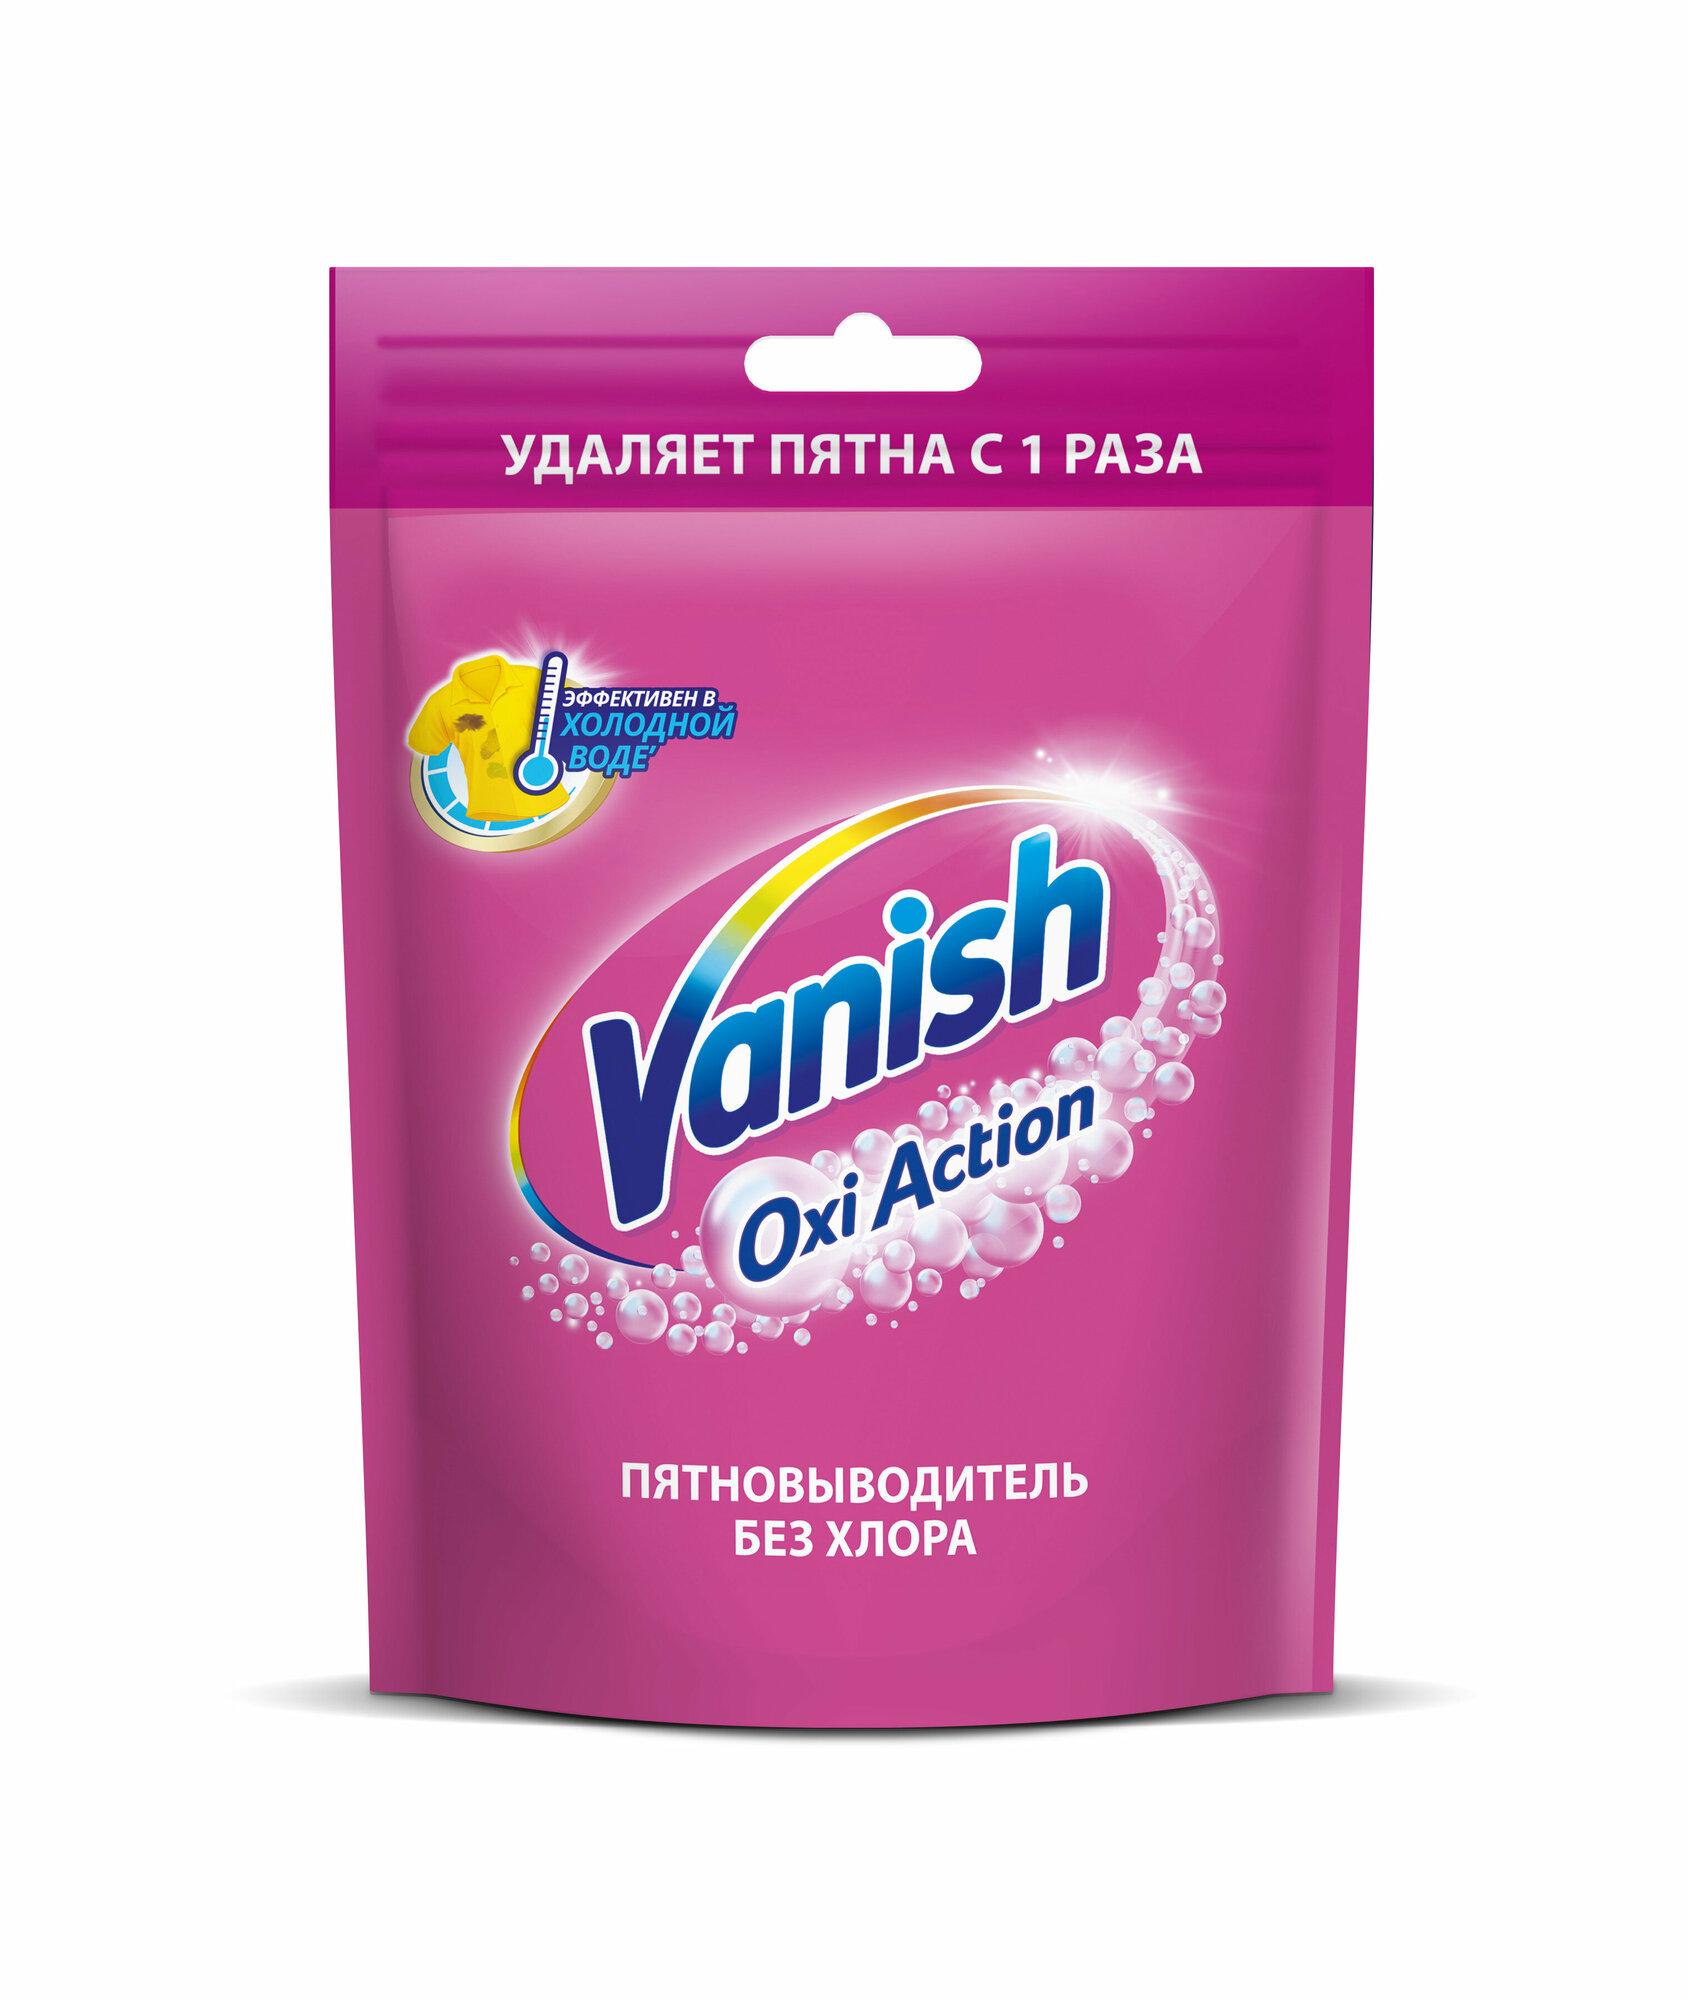 Vanish Oxi Action порошок Кислородный пятновыводитель для цветного белья и вещей, 1 кг